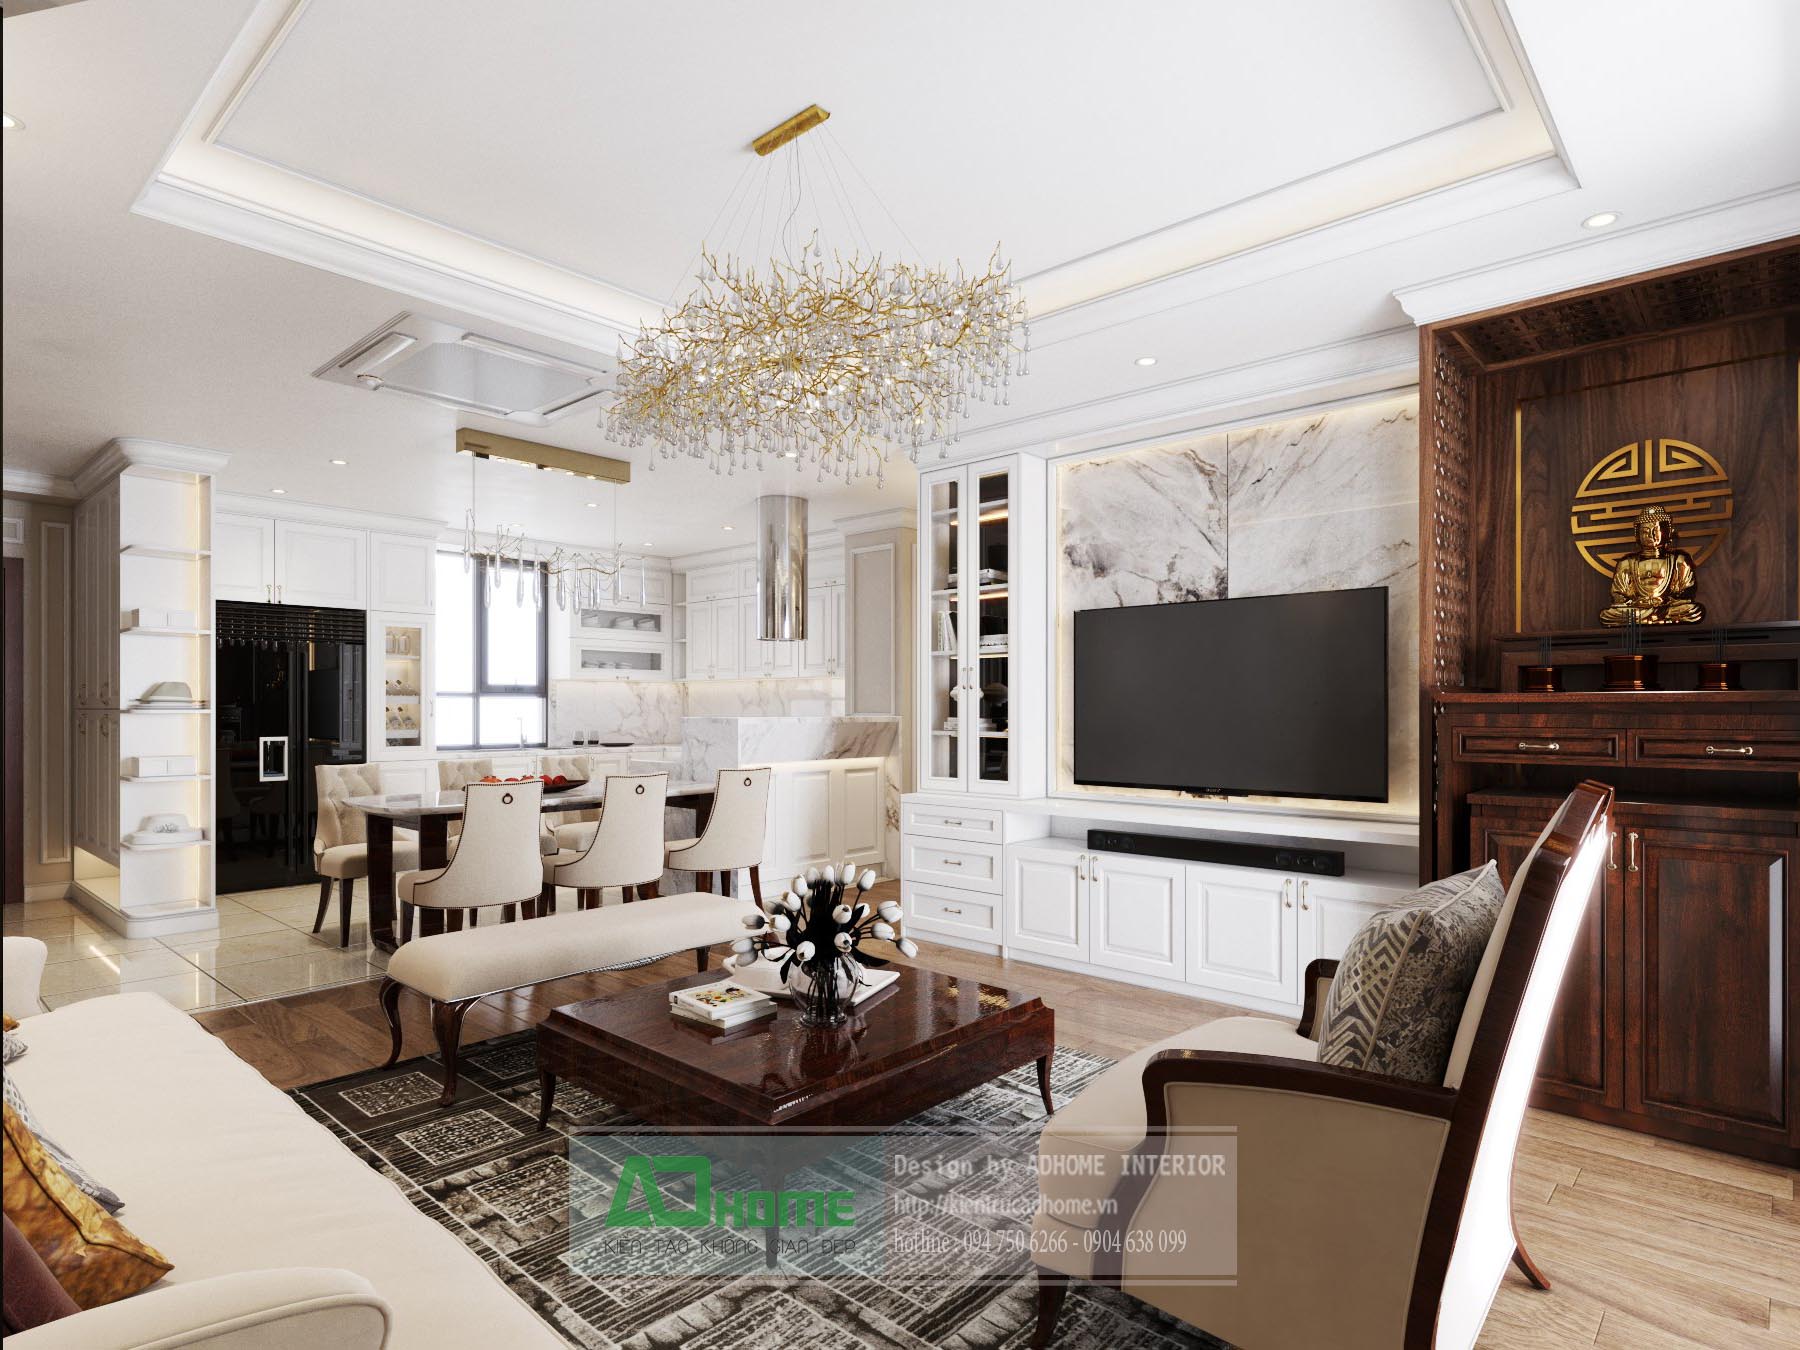 Goldmarkcity - Thiết kế và thi công nội thất căn hộ 01 Diamond 139m2 - Phong cách Tân Cổ Điển